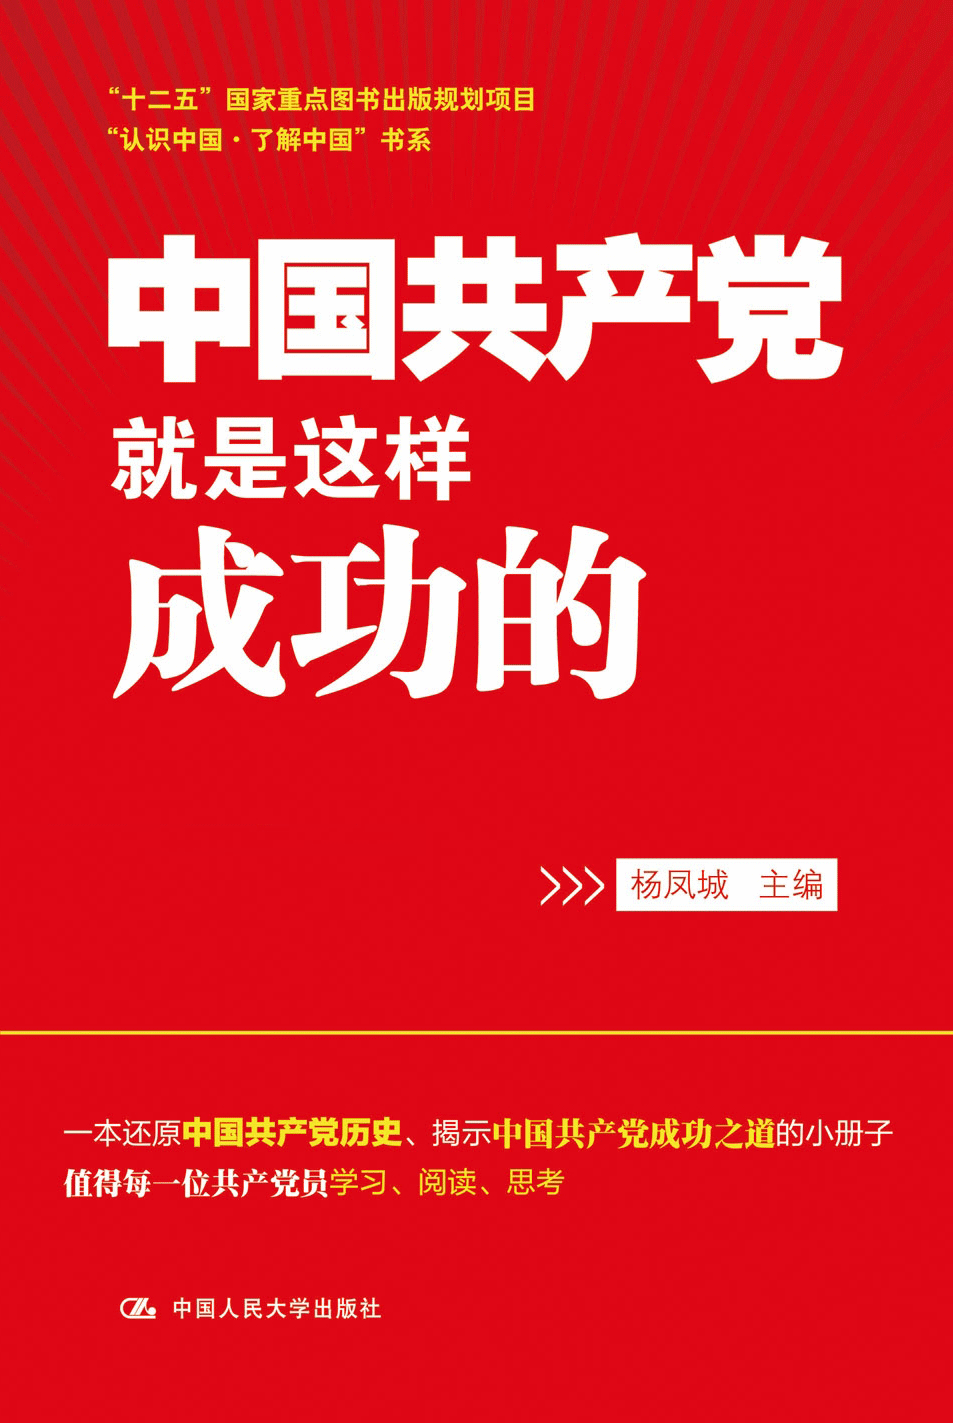 中國共產黨就是這樣成功的			 回顧近百年黨史，人們不禁要問：中國共產黨是如何從革命和建設的逆境中走出。[詳細]